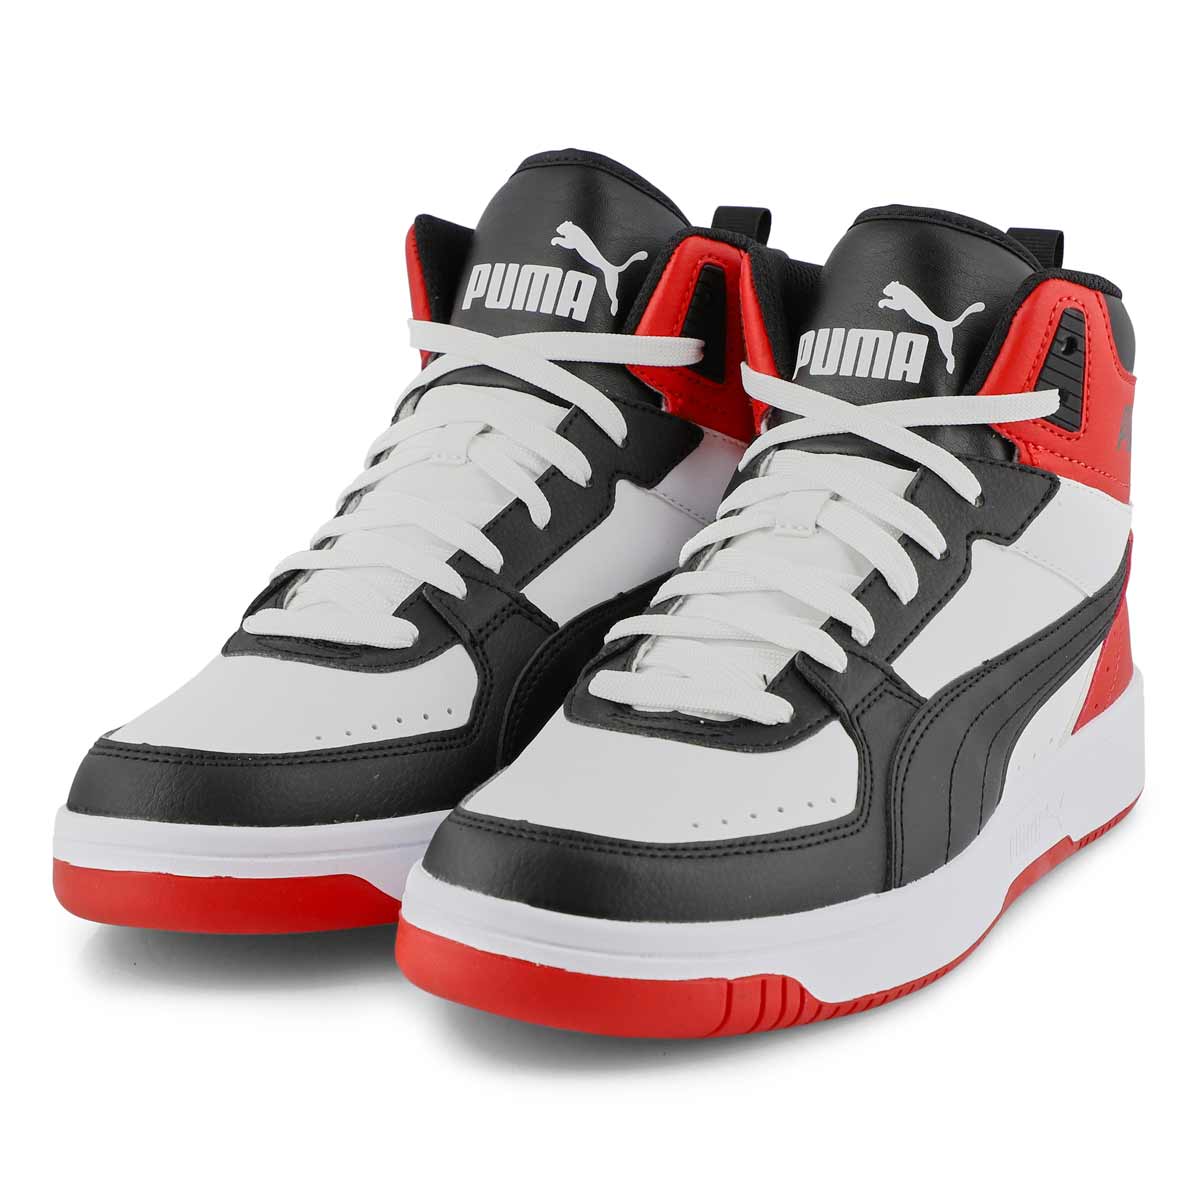 Puma Men's Rebound Joy Sneaker - Black/ Red | SoftMoc.com